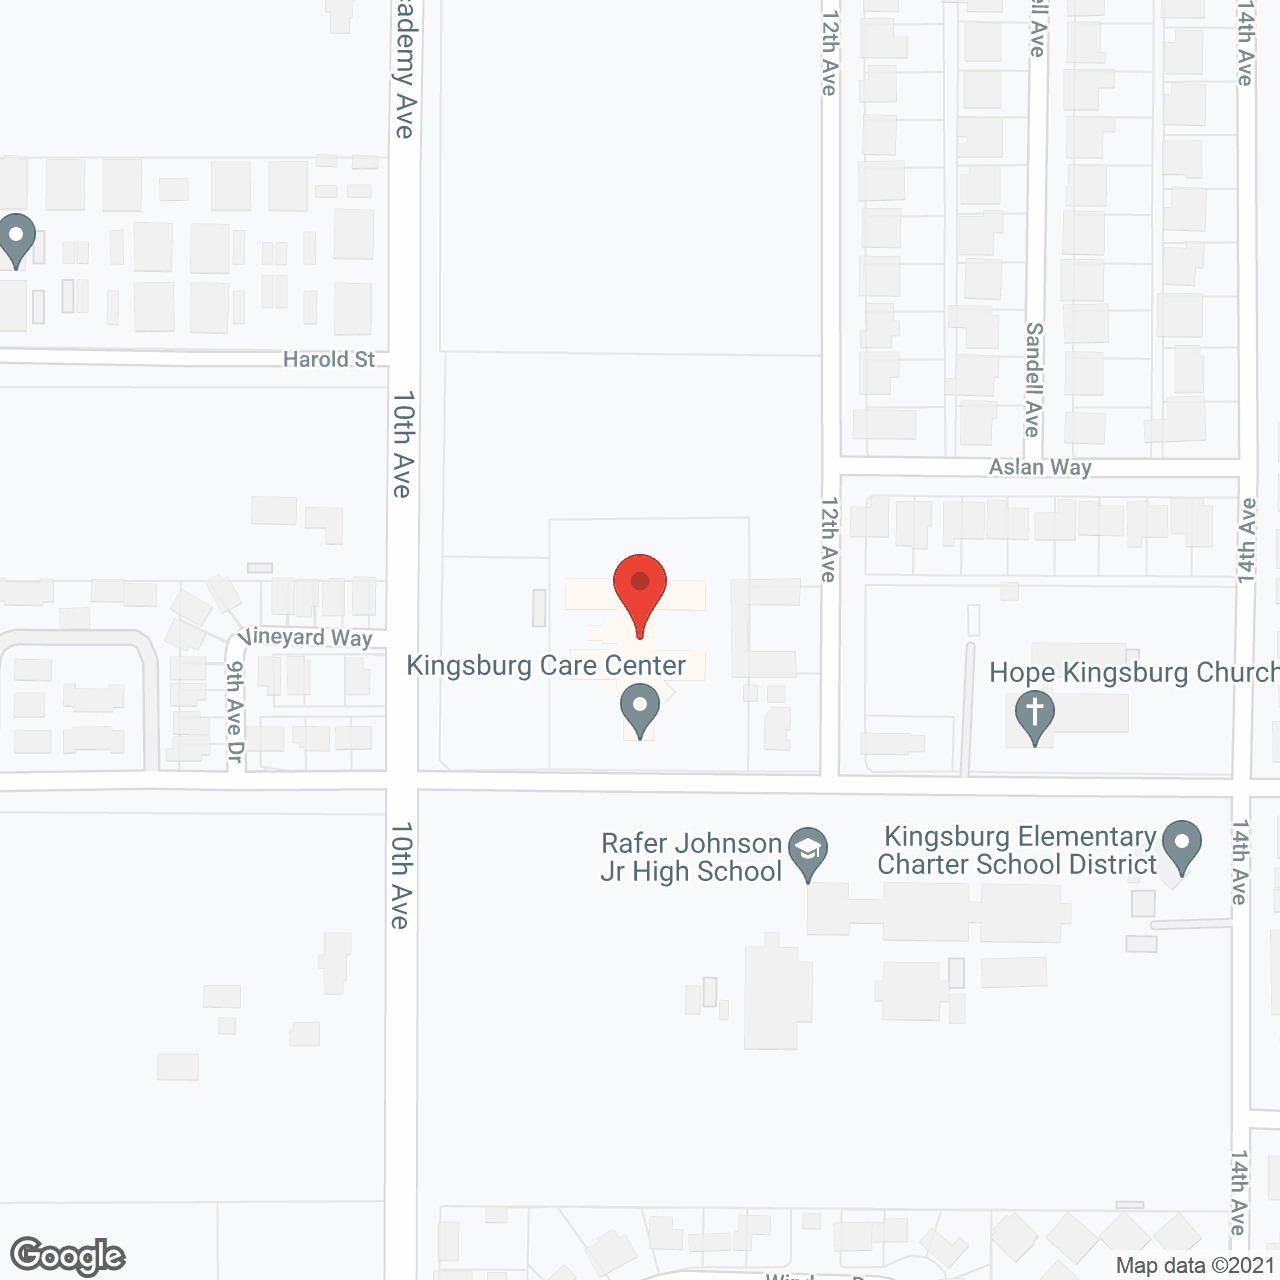 SunBridge Care Center for Kingsburg in google map